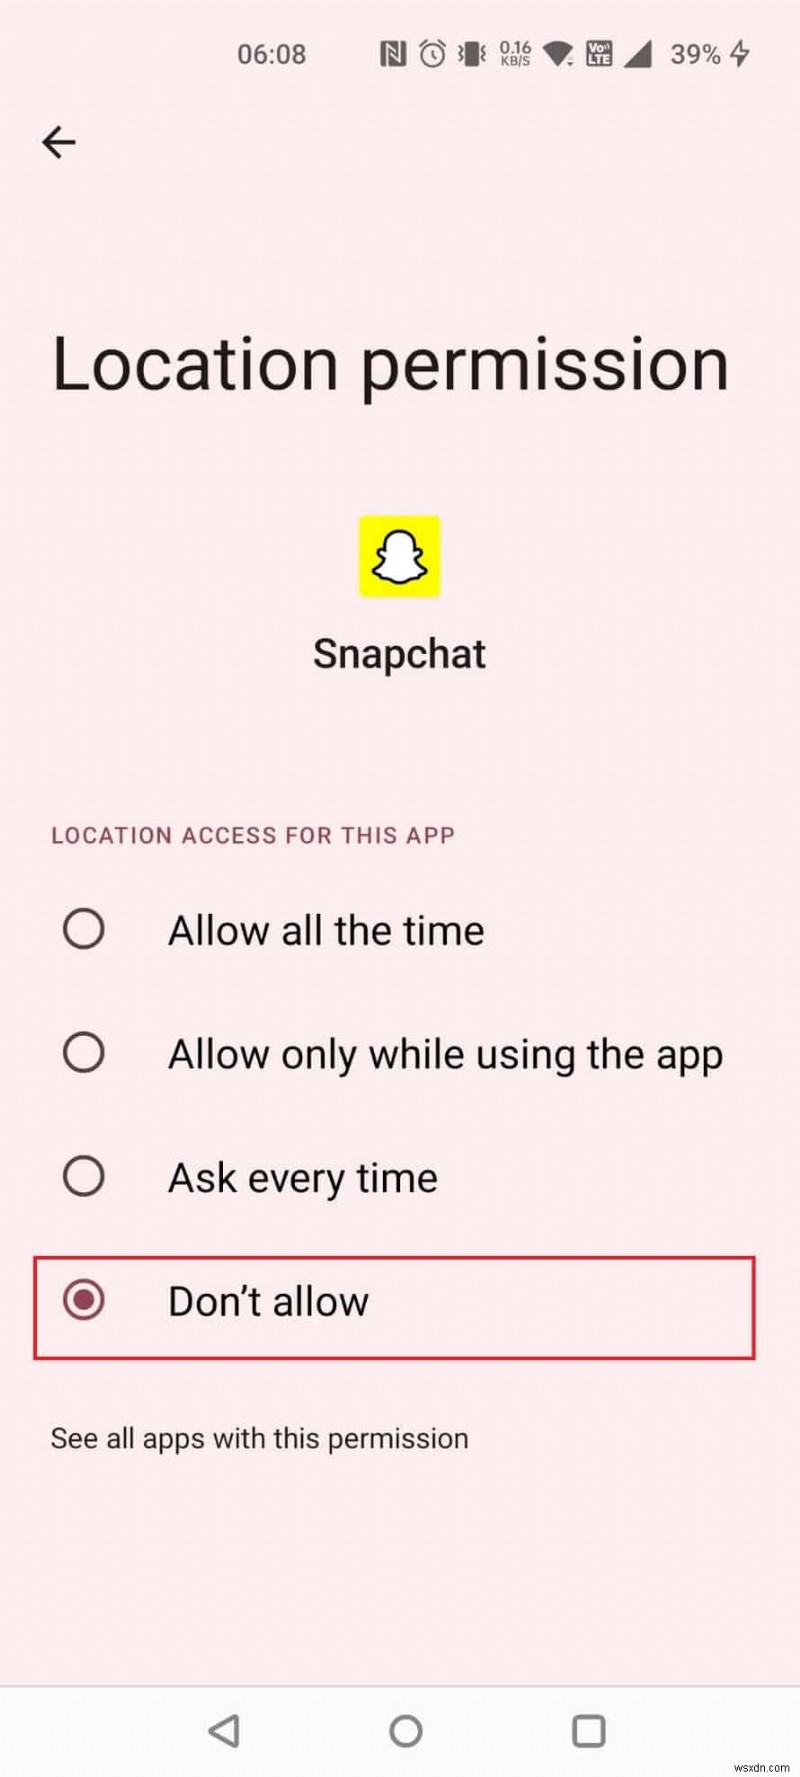 Snapchat을 추적할 수 있습니까?